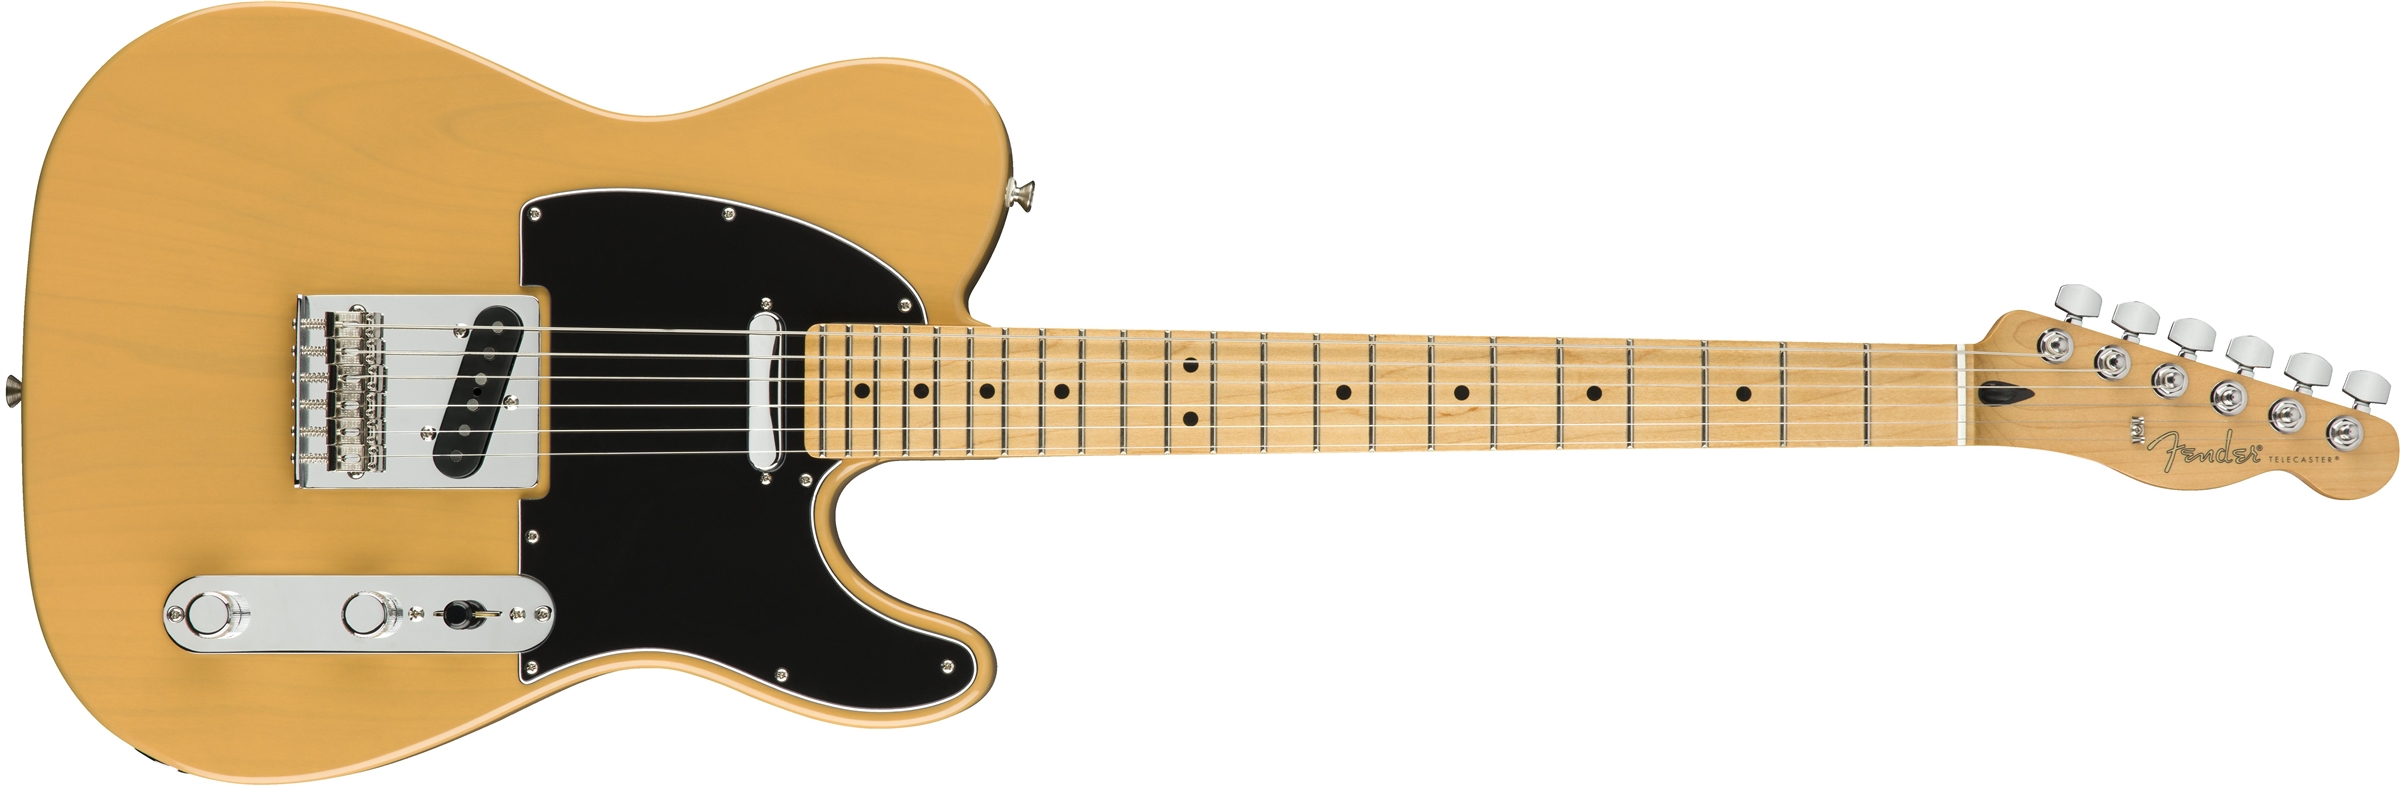 Fender Tele Player Mex Mn - Butterscotch Blonde - Televorm elektrische gitaar - Variation 1